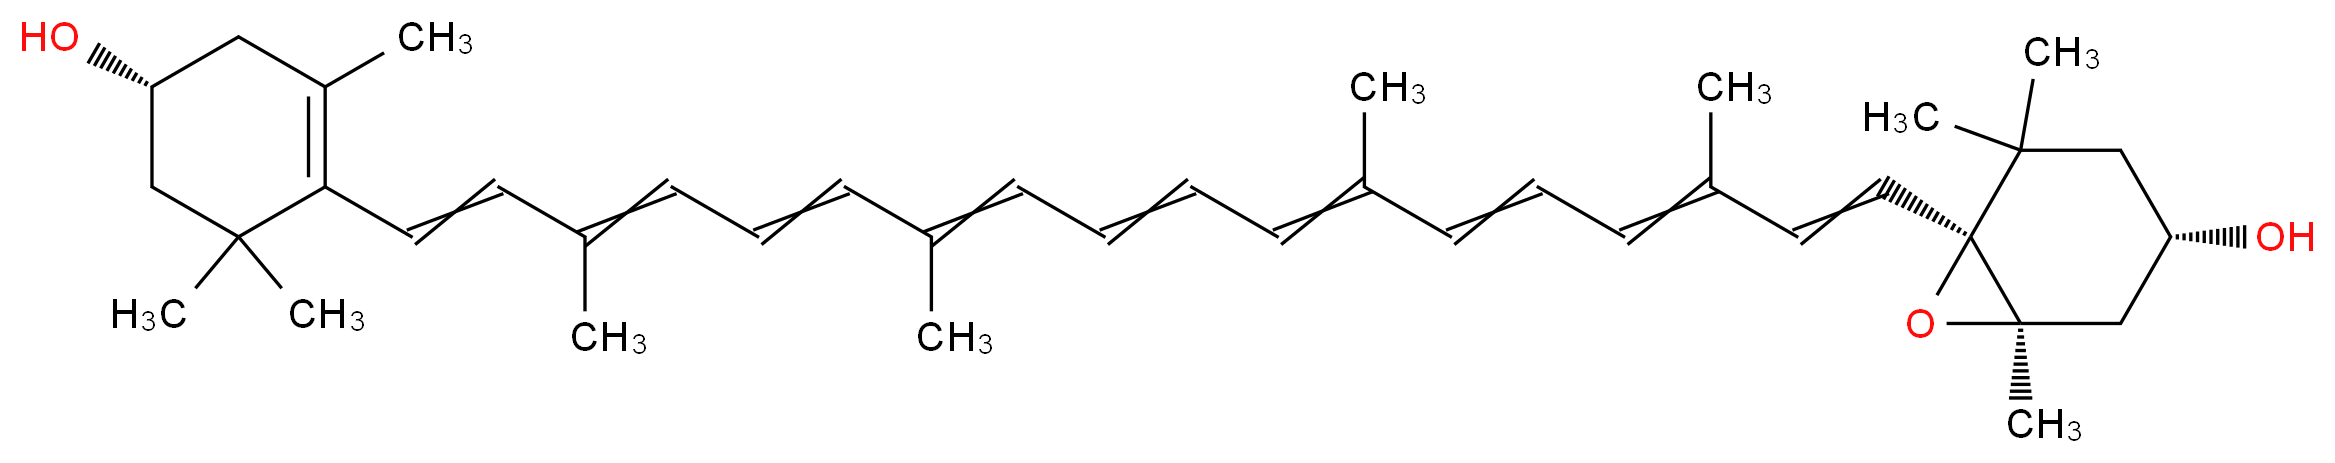 (1R,3S,6S)-6-{18-[(4R)-4-hydroxy-2,6,6-trimethylcyclohex-1-en-1-yl]-3,7,12,16-tetramethyloctadeca-1,3,5,7,9,11,13,15,17-nonaen-1-yl}-1,5,5-trimethyl-7-oxabicyclo[4.1.0]heptan-3-ol_分子结构_CAS_640-03-9